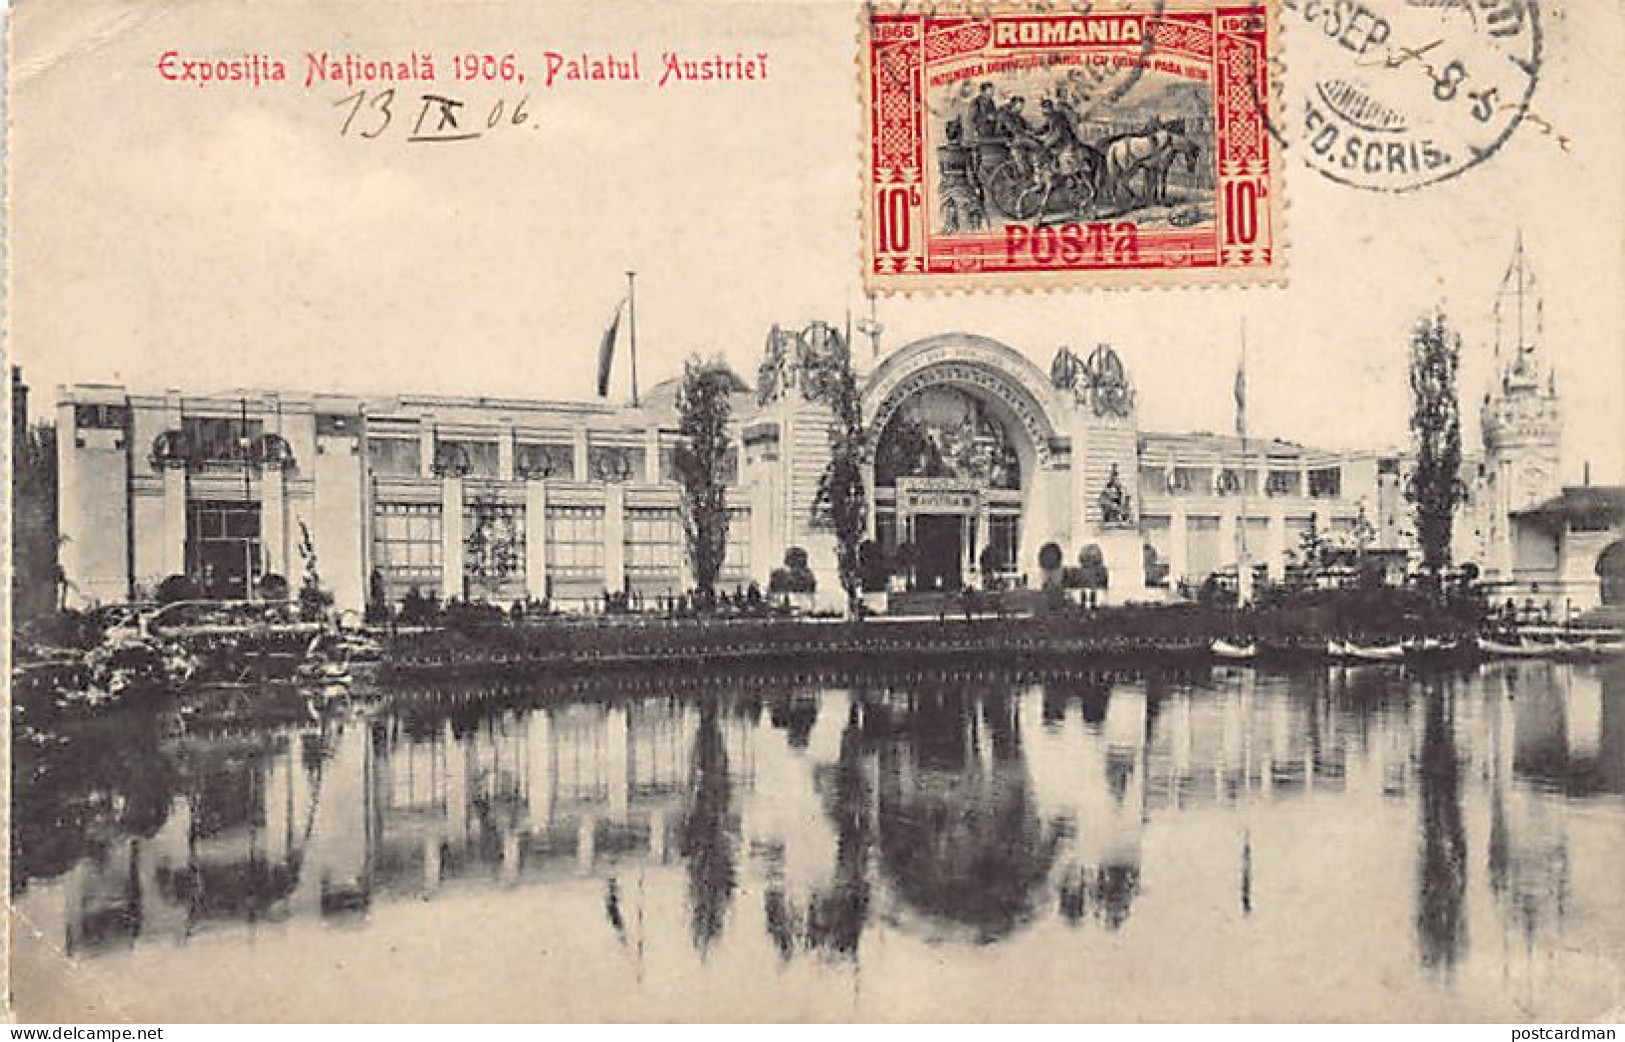 Romania - BUCURESTI - Expositia National 1906 - Palatul Austriei - Ed. Al. Antoniu - SOCEC  - Roumanie